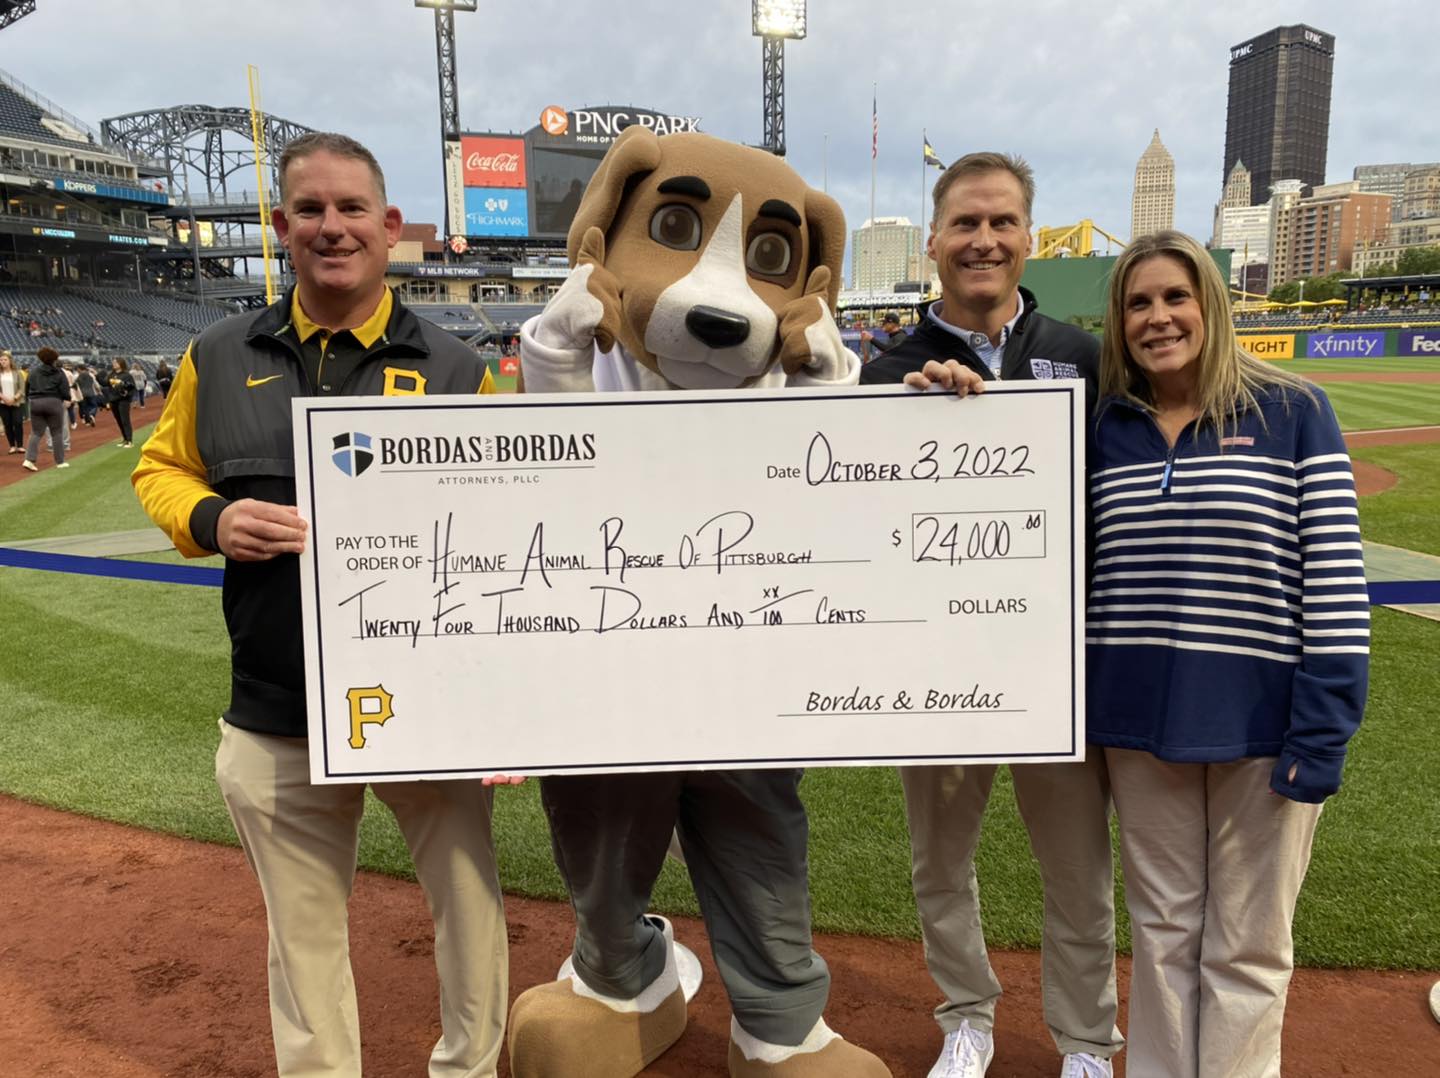 Bordas & Bordas Donates $24,800 to Humane Animal Rescue of Pittsburgh  through Pittsburgh Pirates Partnership - Bordas & Bordas